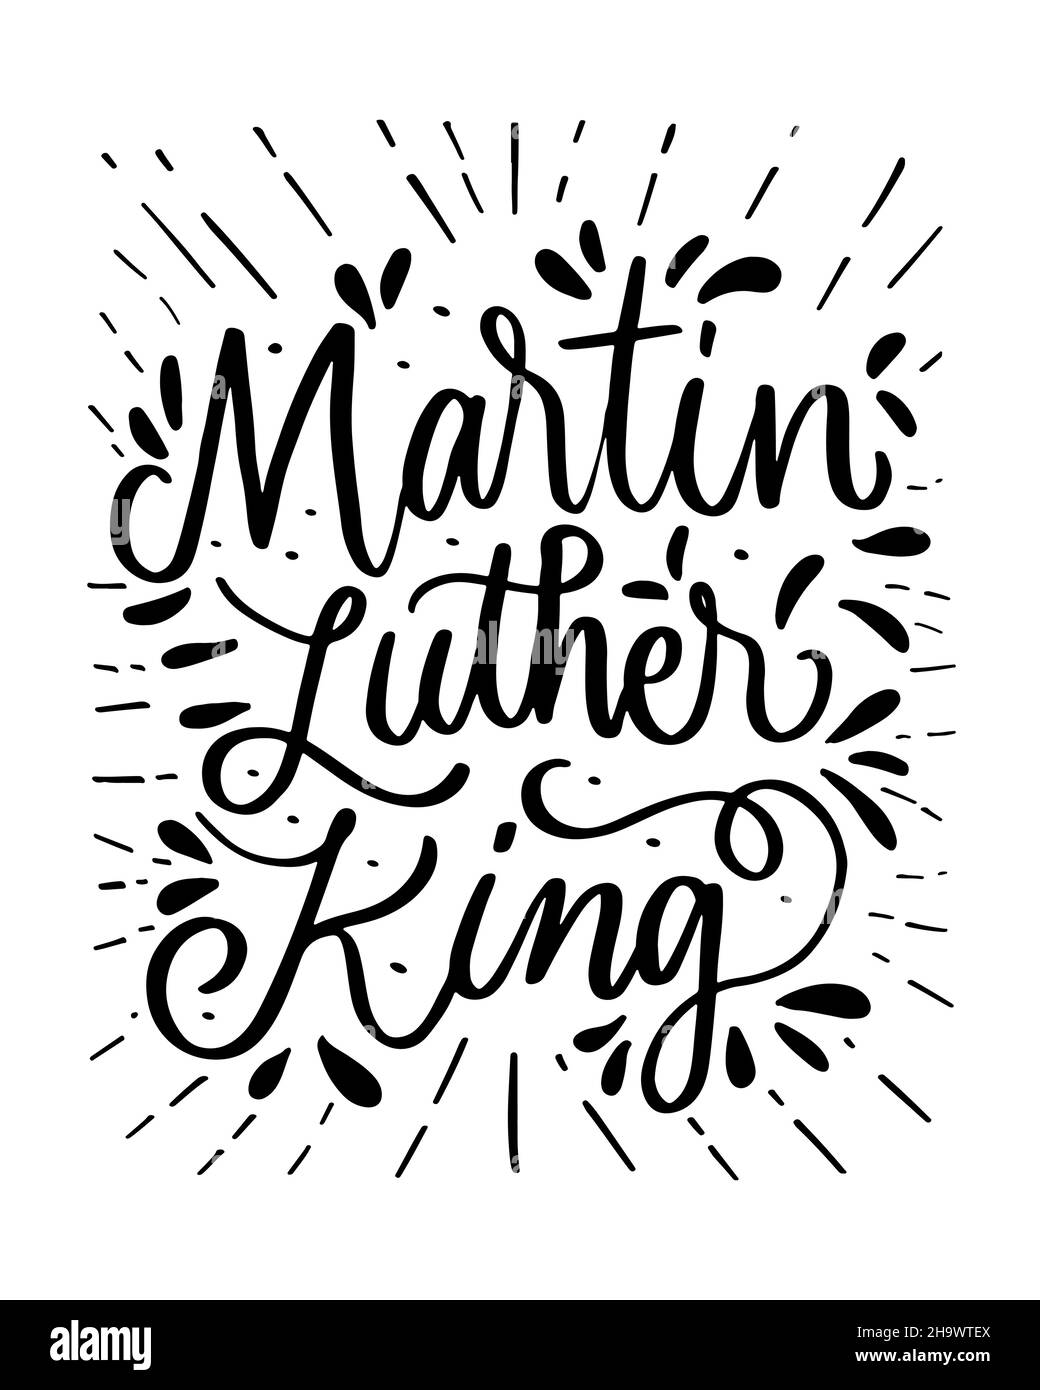 martin luther King lettrage à la main pour célébrer le jour de la MLK. martin luther King typographie, bannière, affiche. Conception à vecteur isolé Illustration de Vecteur